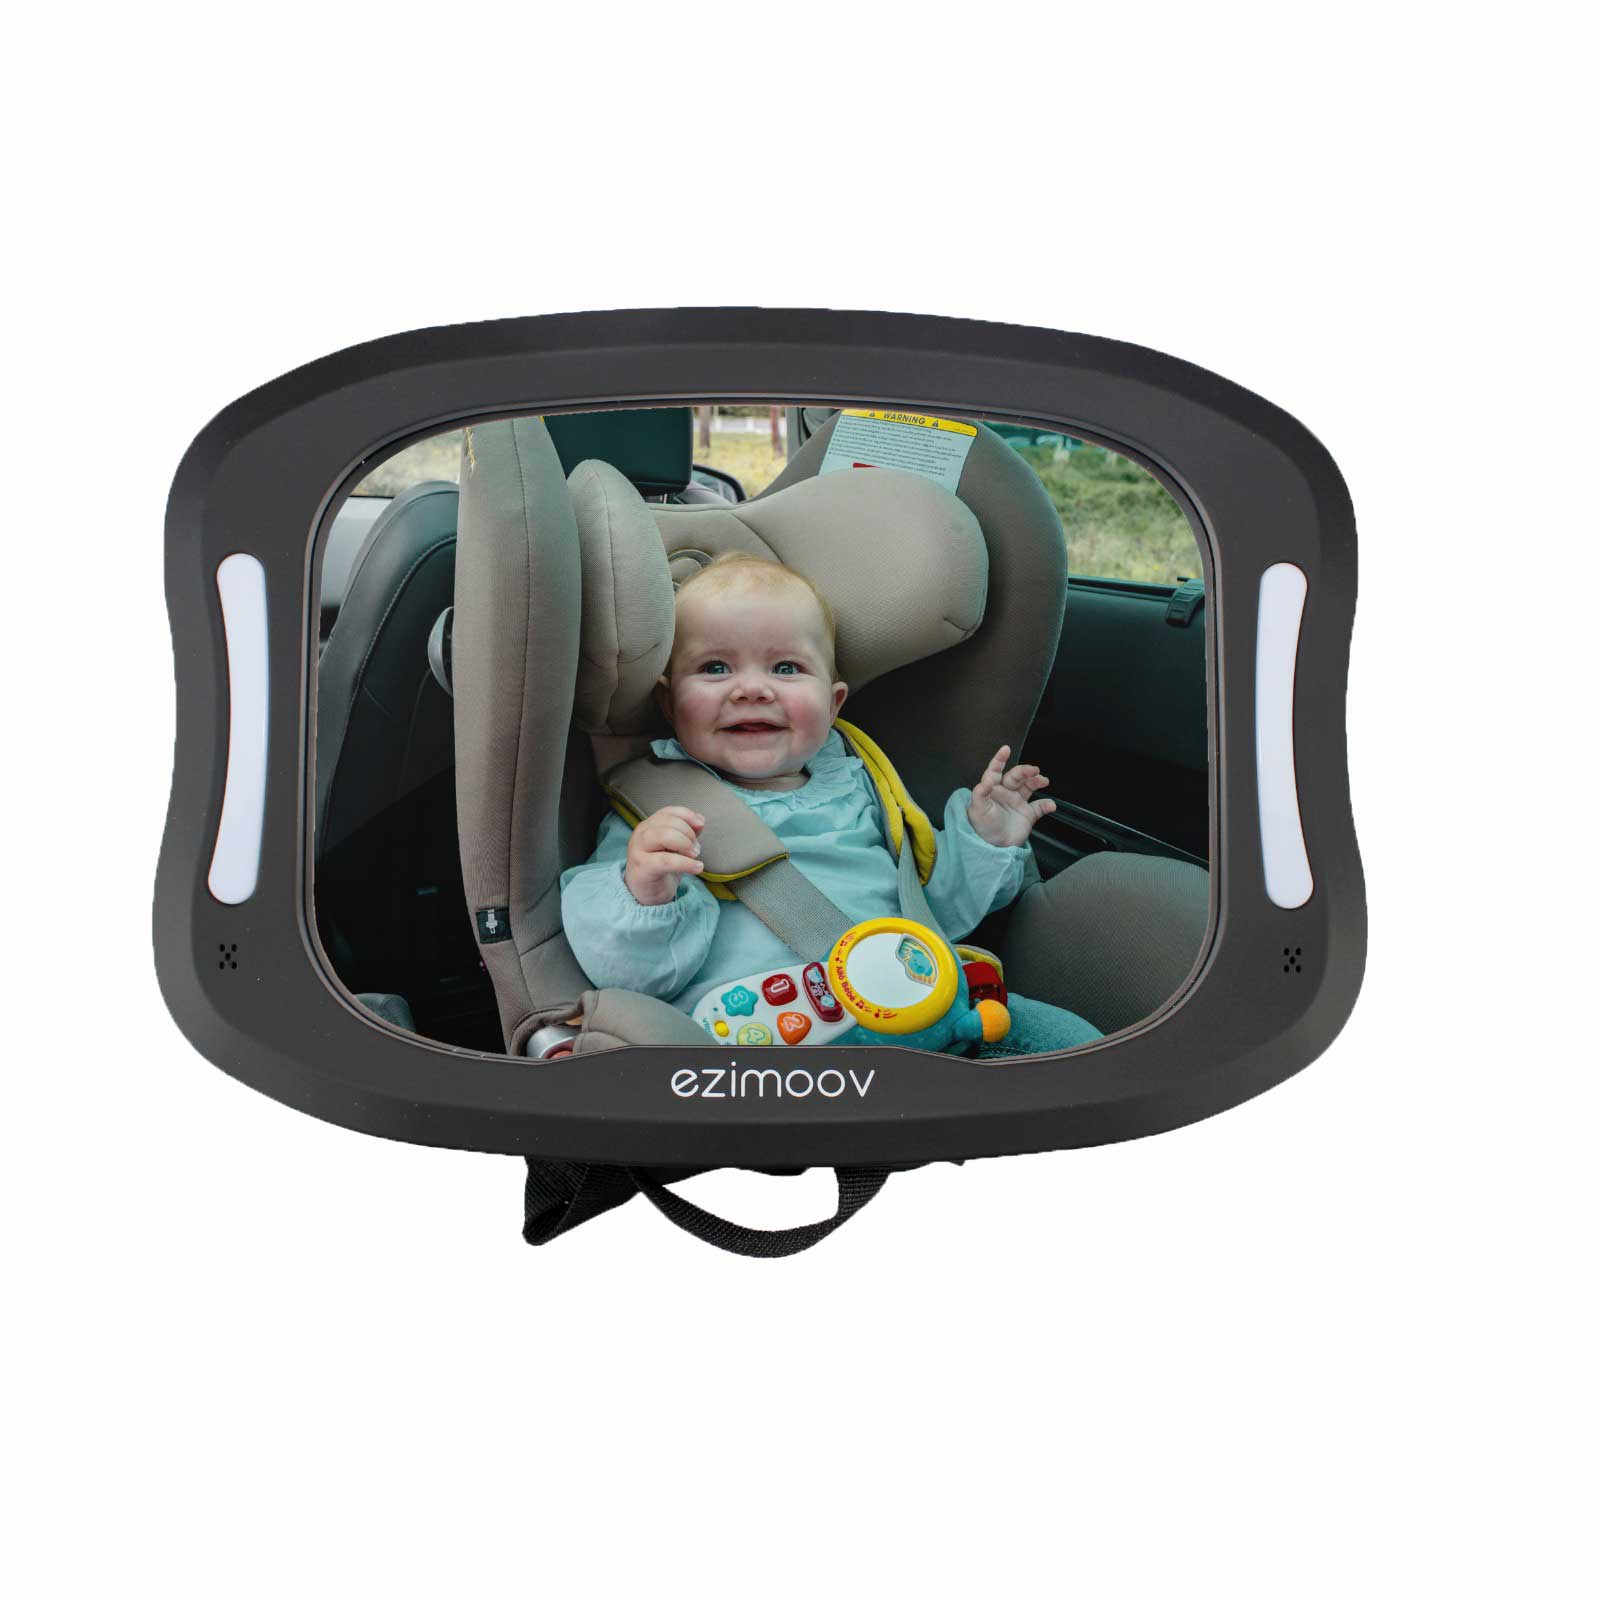 http://ezimoov.com/cdn/shop/products/ezimoov-mirror-led-car-baby.jpg?v=1670411062